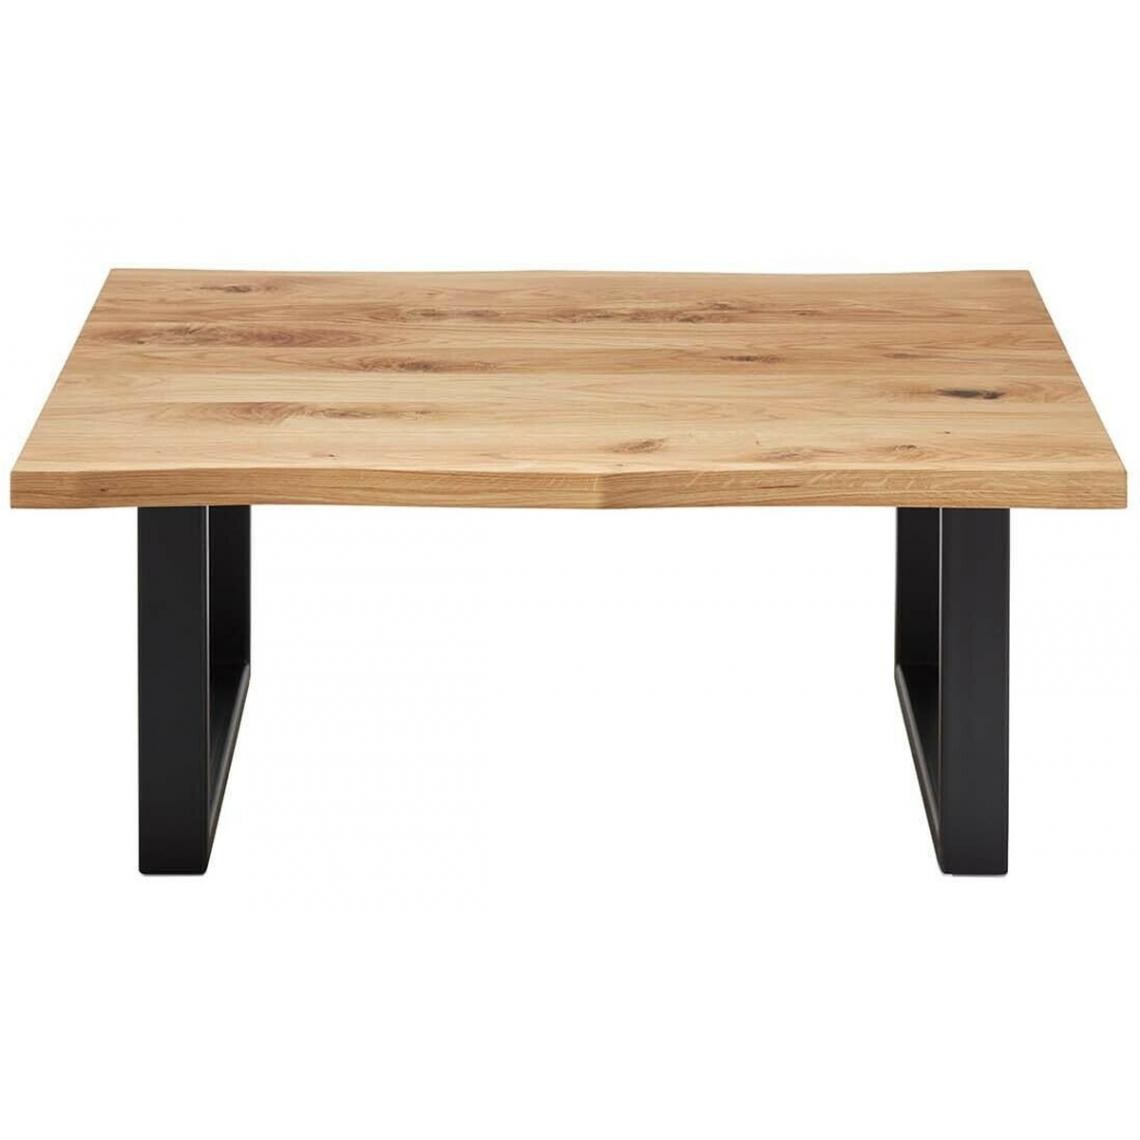 Pegane - Table basse simple en chêne massif huilé et métal - L.110 x H.45 x P.70 cm - Tables basses